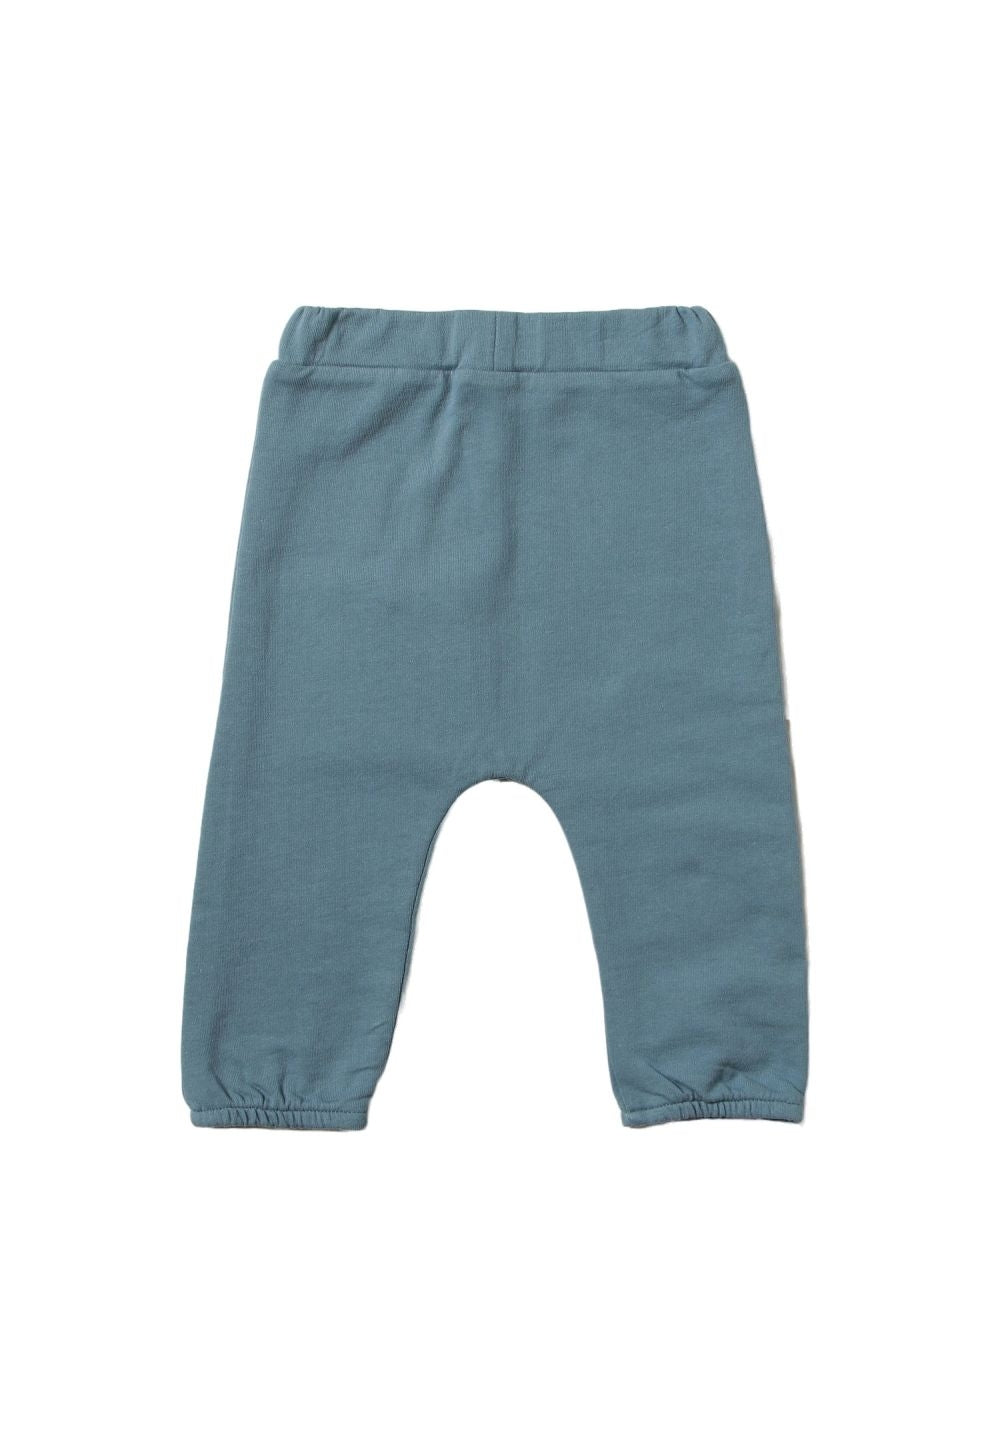 Pantalone celeste per neonata - Primamoda kids